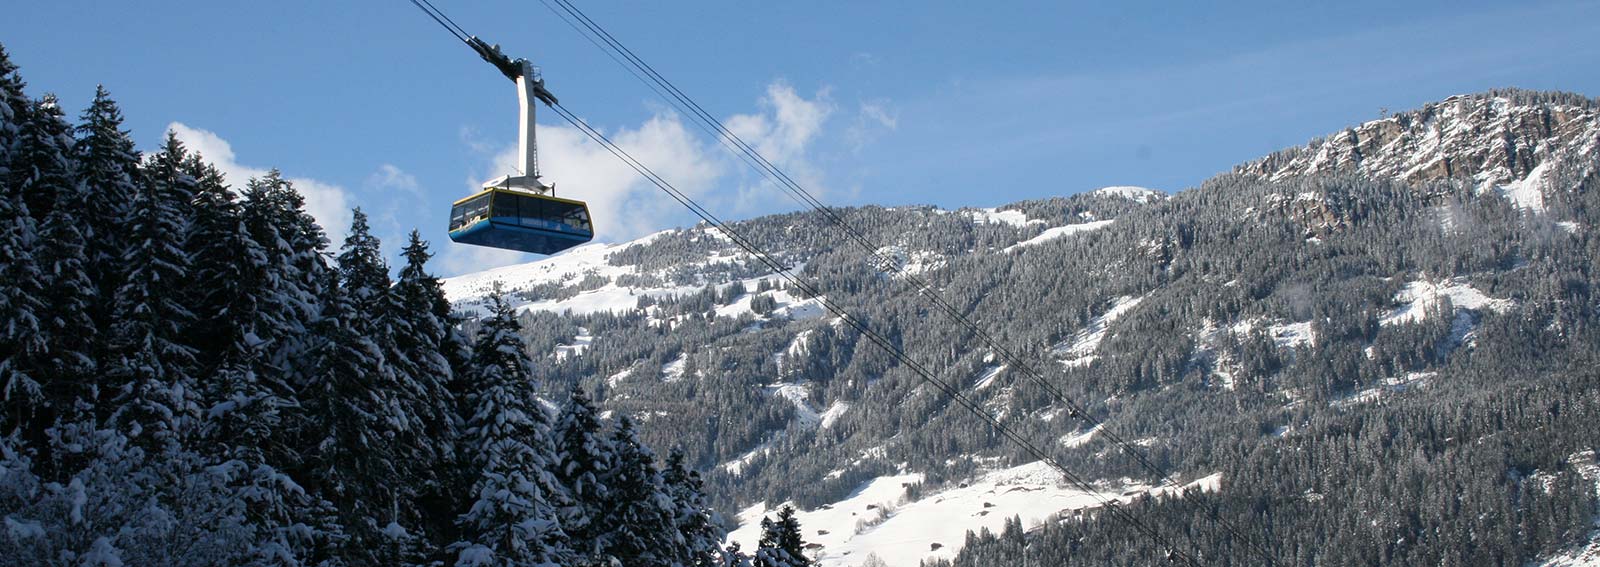 Ahorn Gondola Mayrhofen